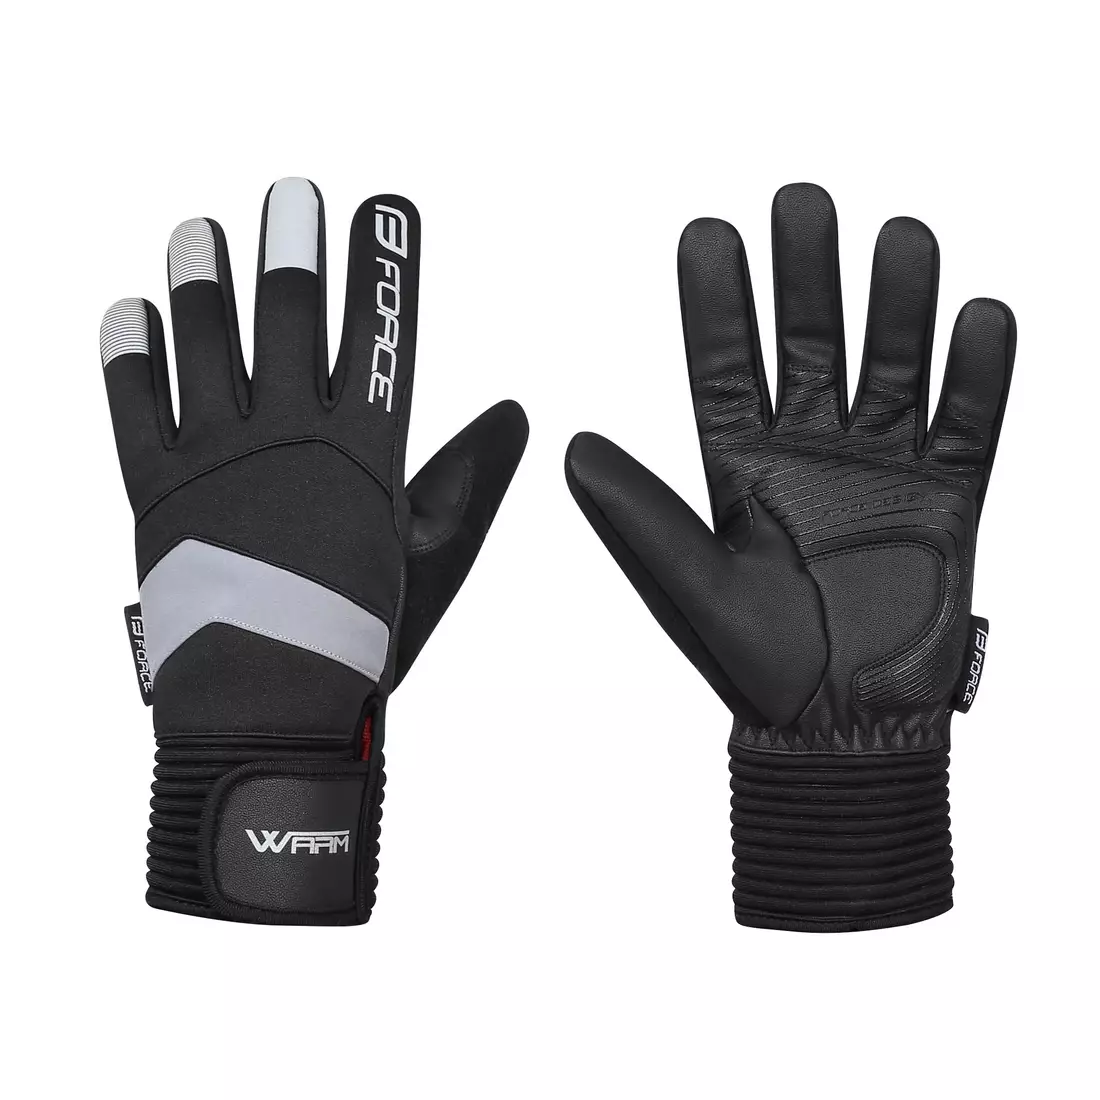 FORCE WARM zimní cyklistické / lyžařské rukavice black 90458